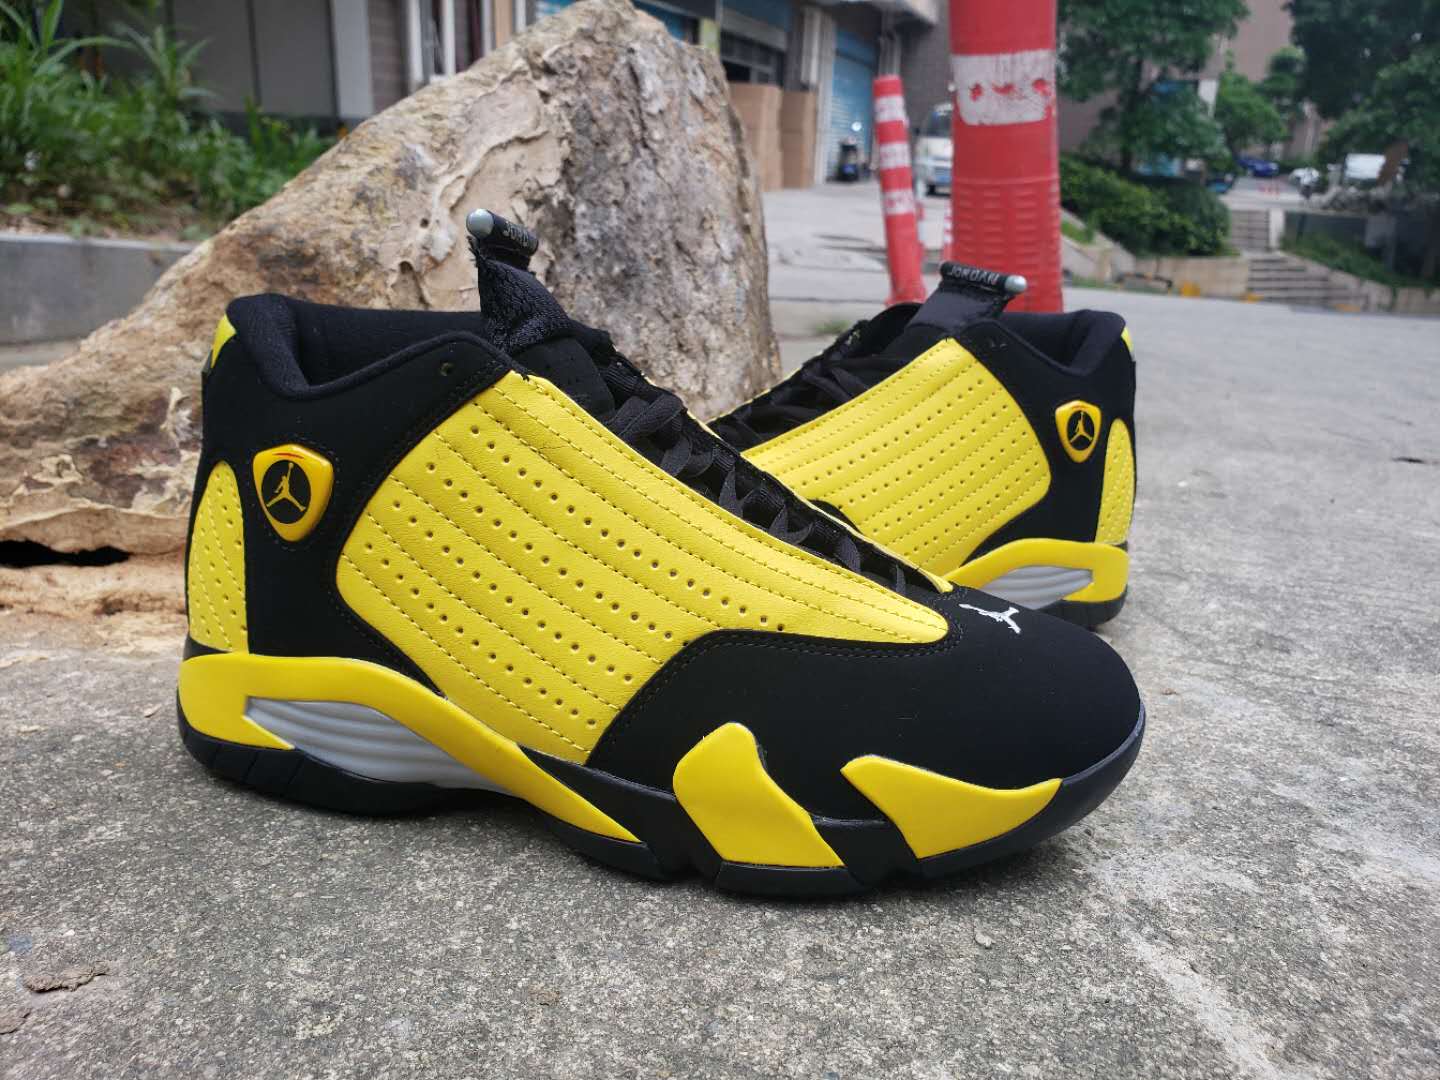 jordan 14s yellow and black